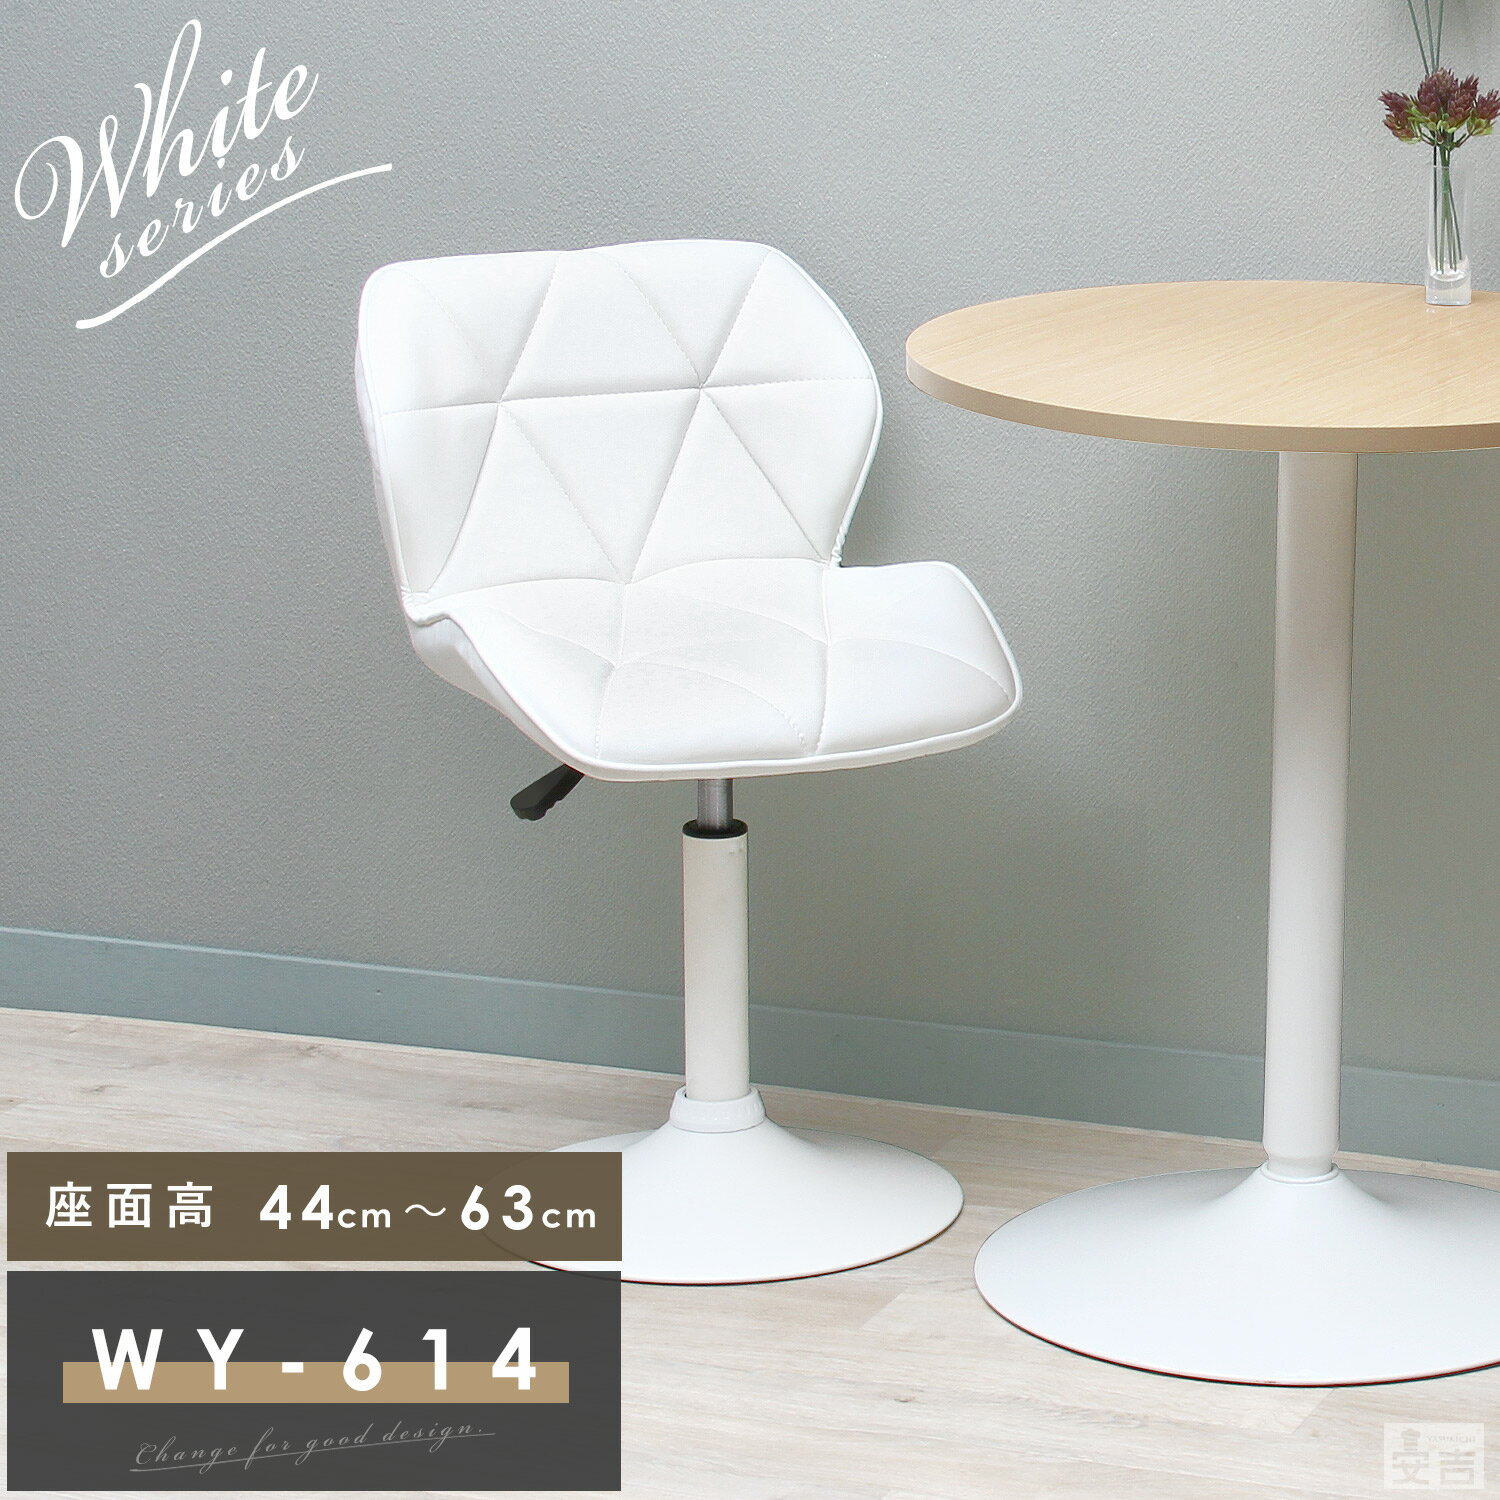 カウンターチェア ロータイプ WY-614S 白脚タイプ【おしゃれ】【ダイニング】【椅子】【イス】【チェア】【チェアー】【デスクチェア】【北欧】【シンプル】【リビング】【チェアー】【ダイニ…